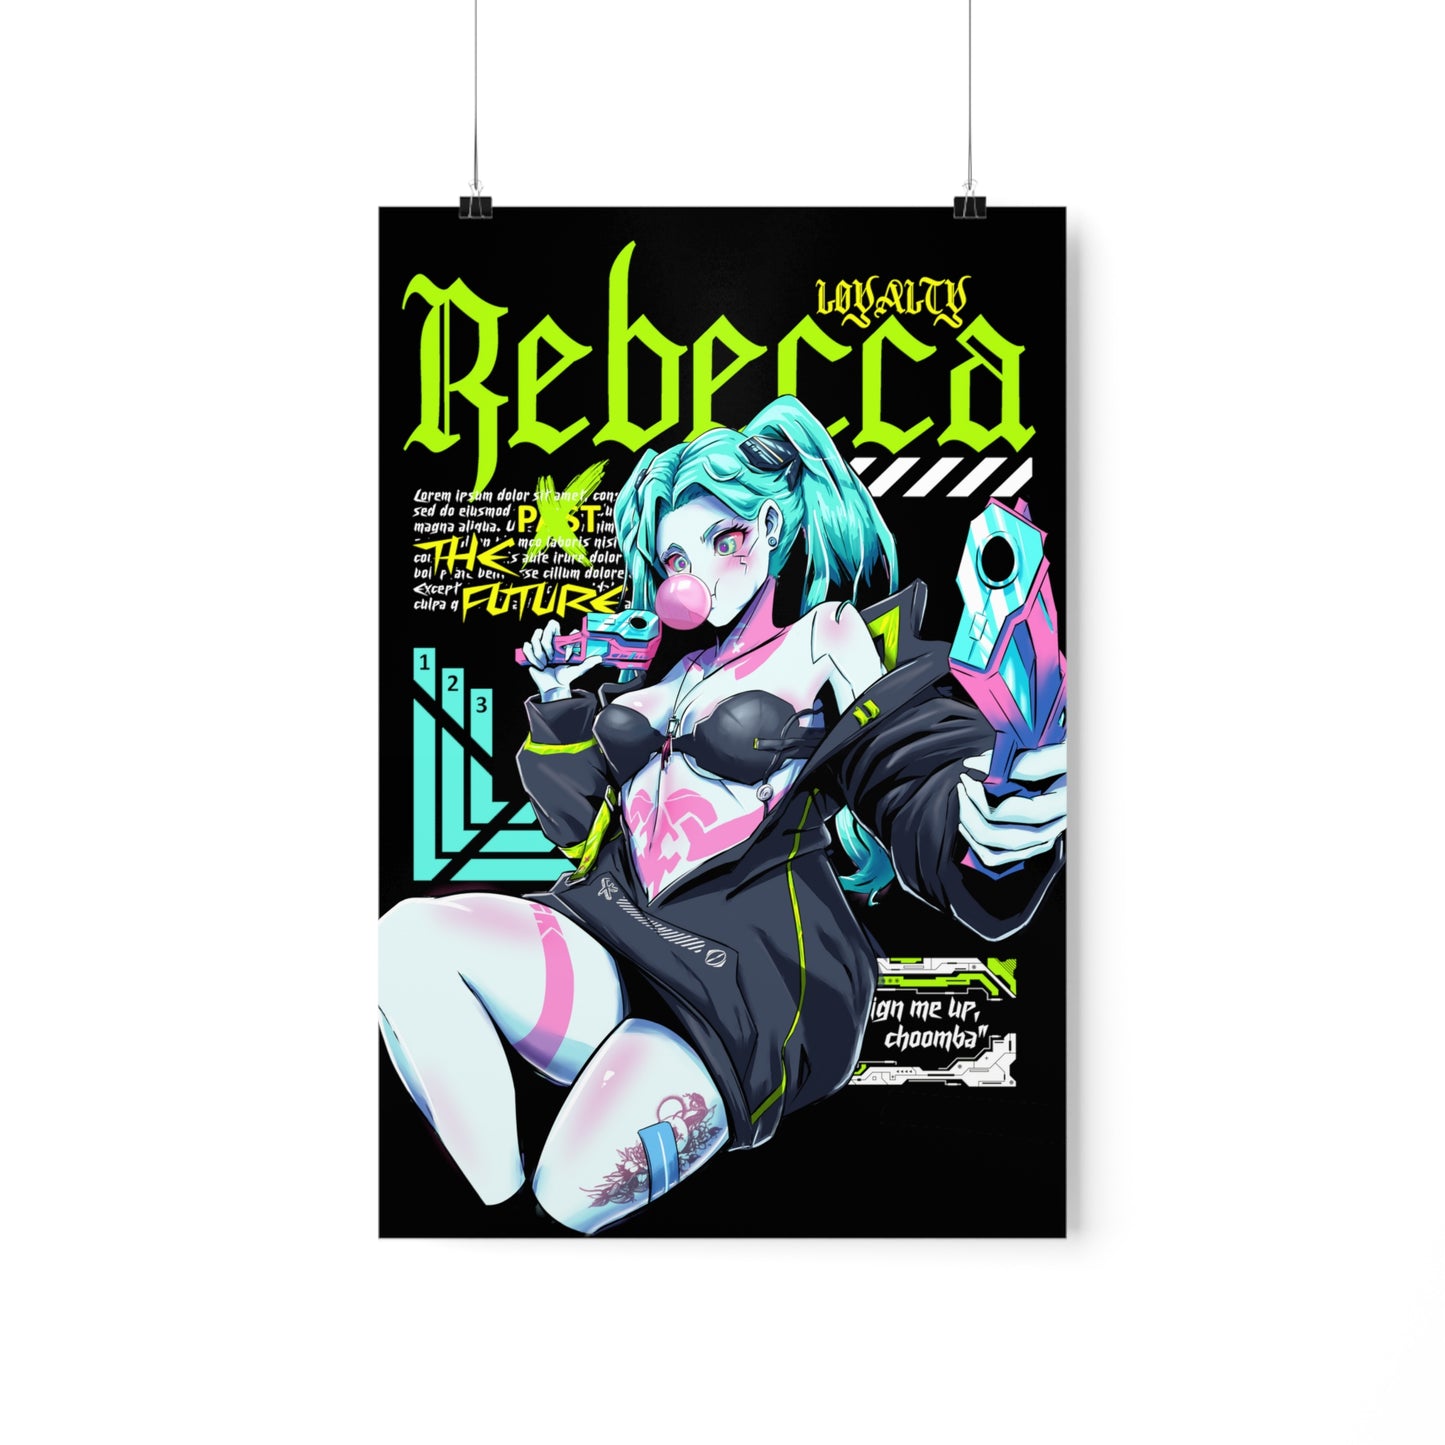 Rebecca / Poster